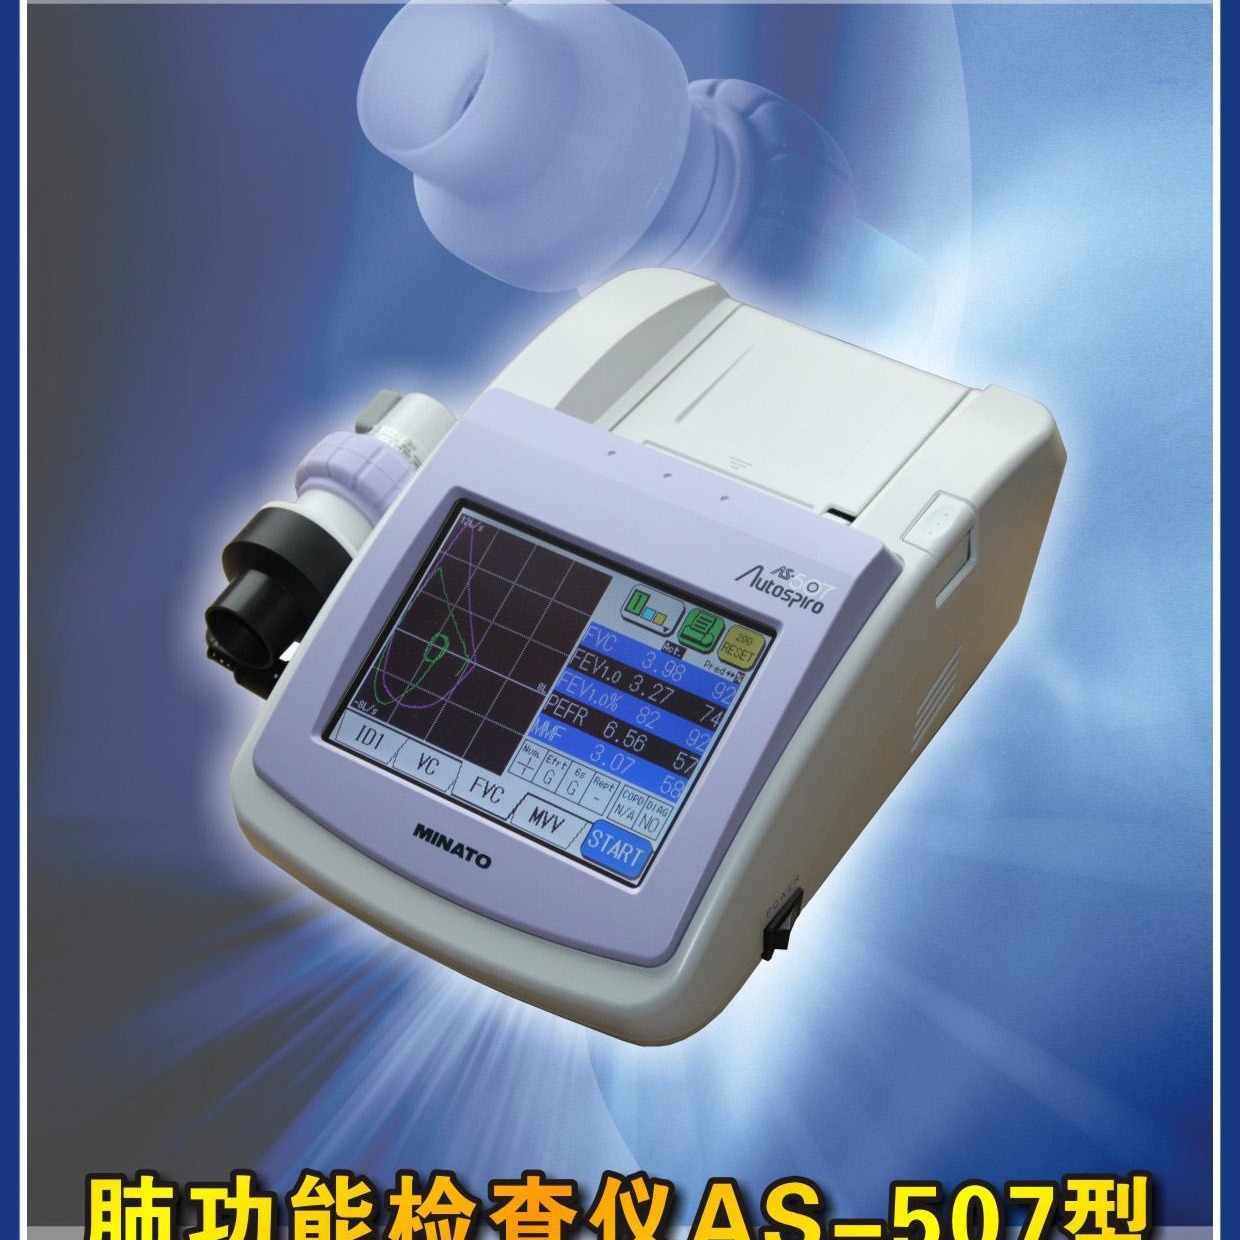 美能AS-507肺功能仪 便携式肺功能仪 推车式肺功能仪图片